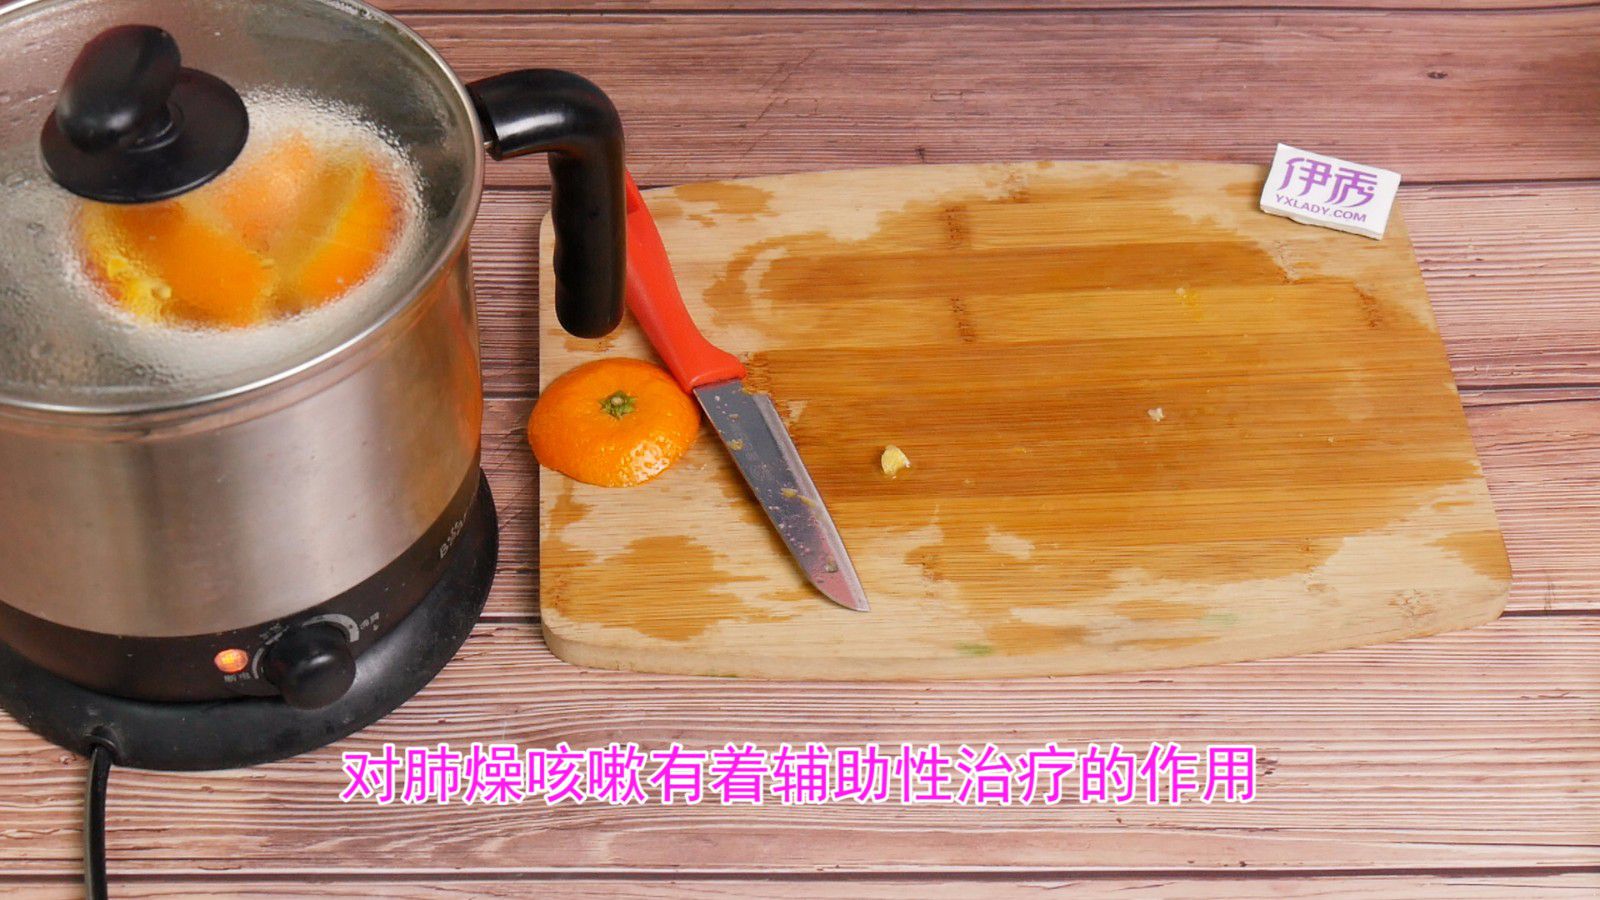 砂糖橘雪梨汁的做法_【图解】砂糖橘雪梨汁怎么做如何做好吃_砂糖橘雪梨汁家常做法大全_谢小果美食_豆果美食